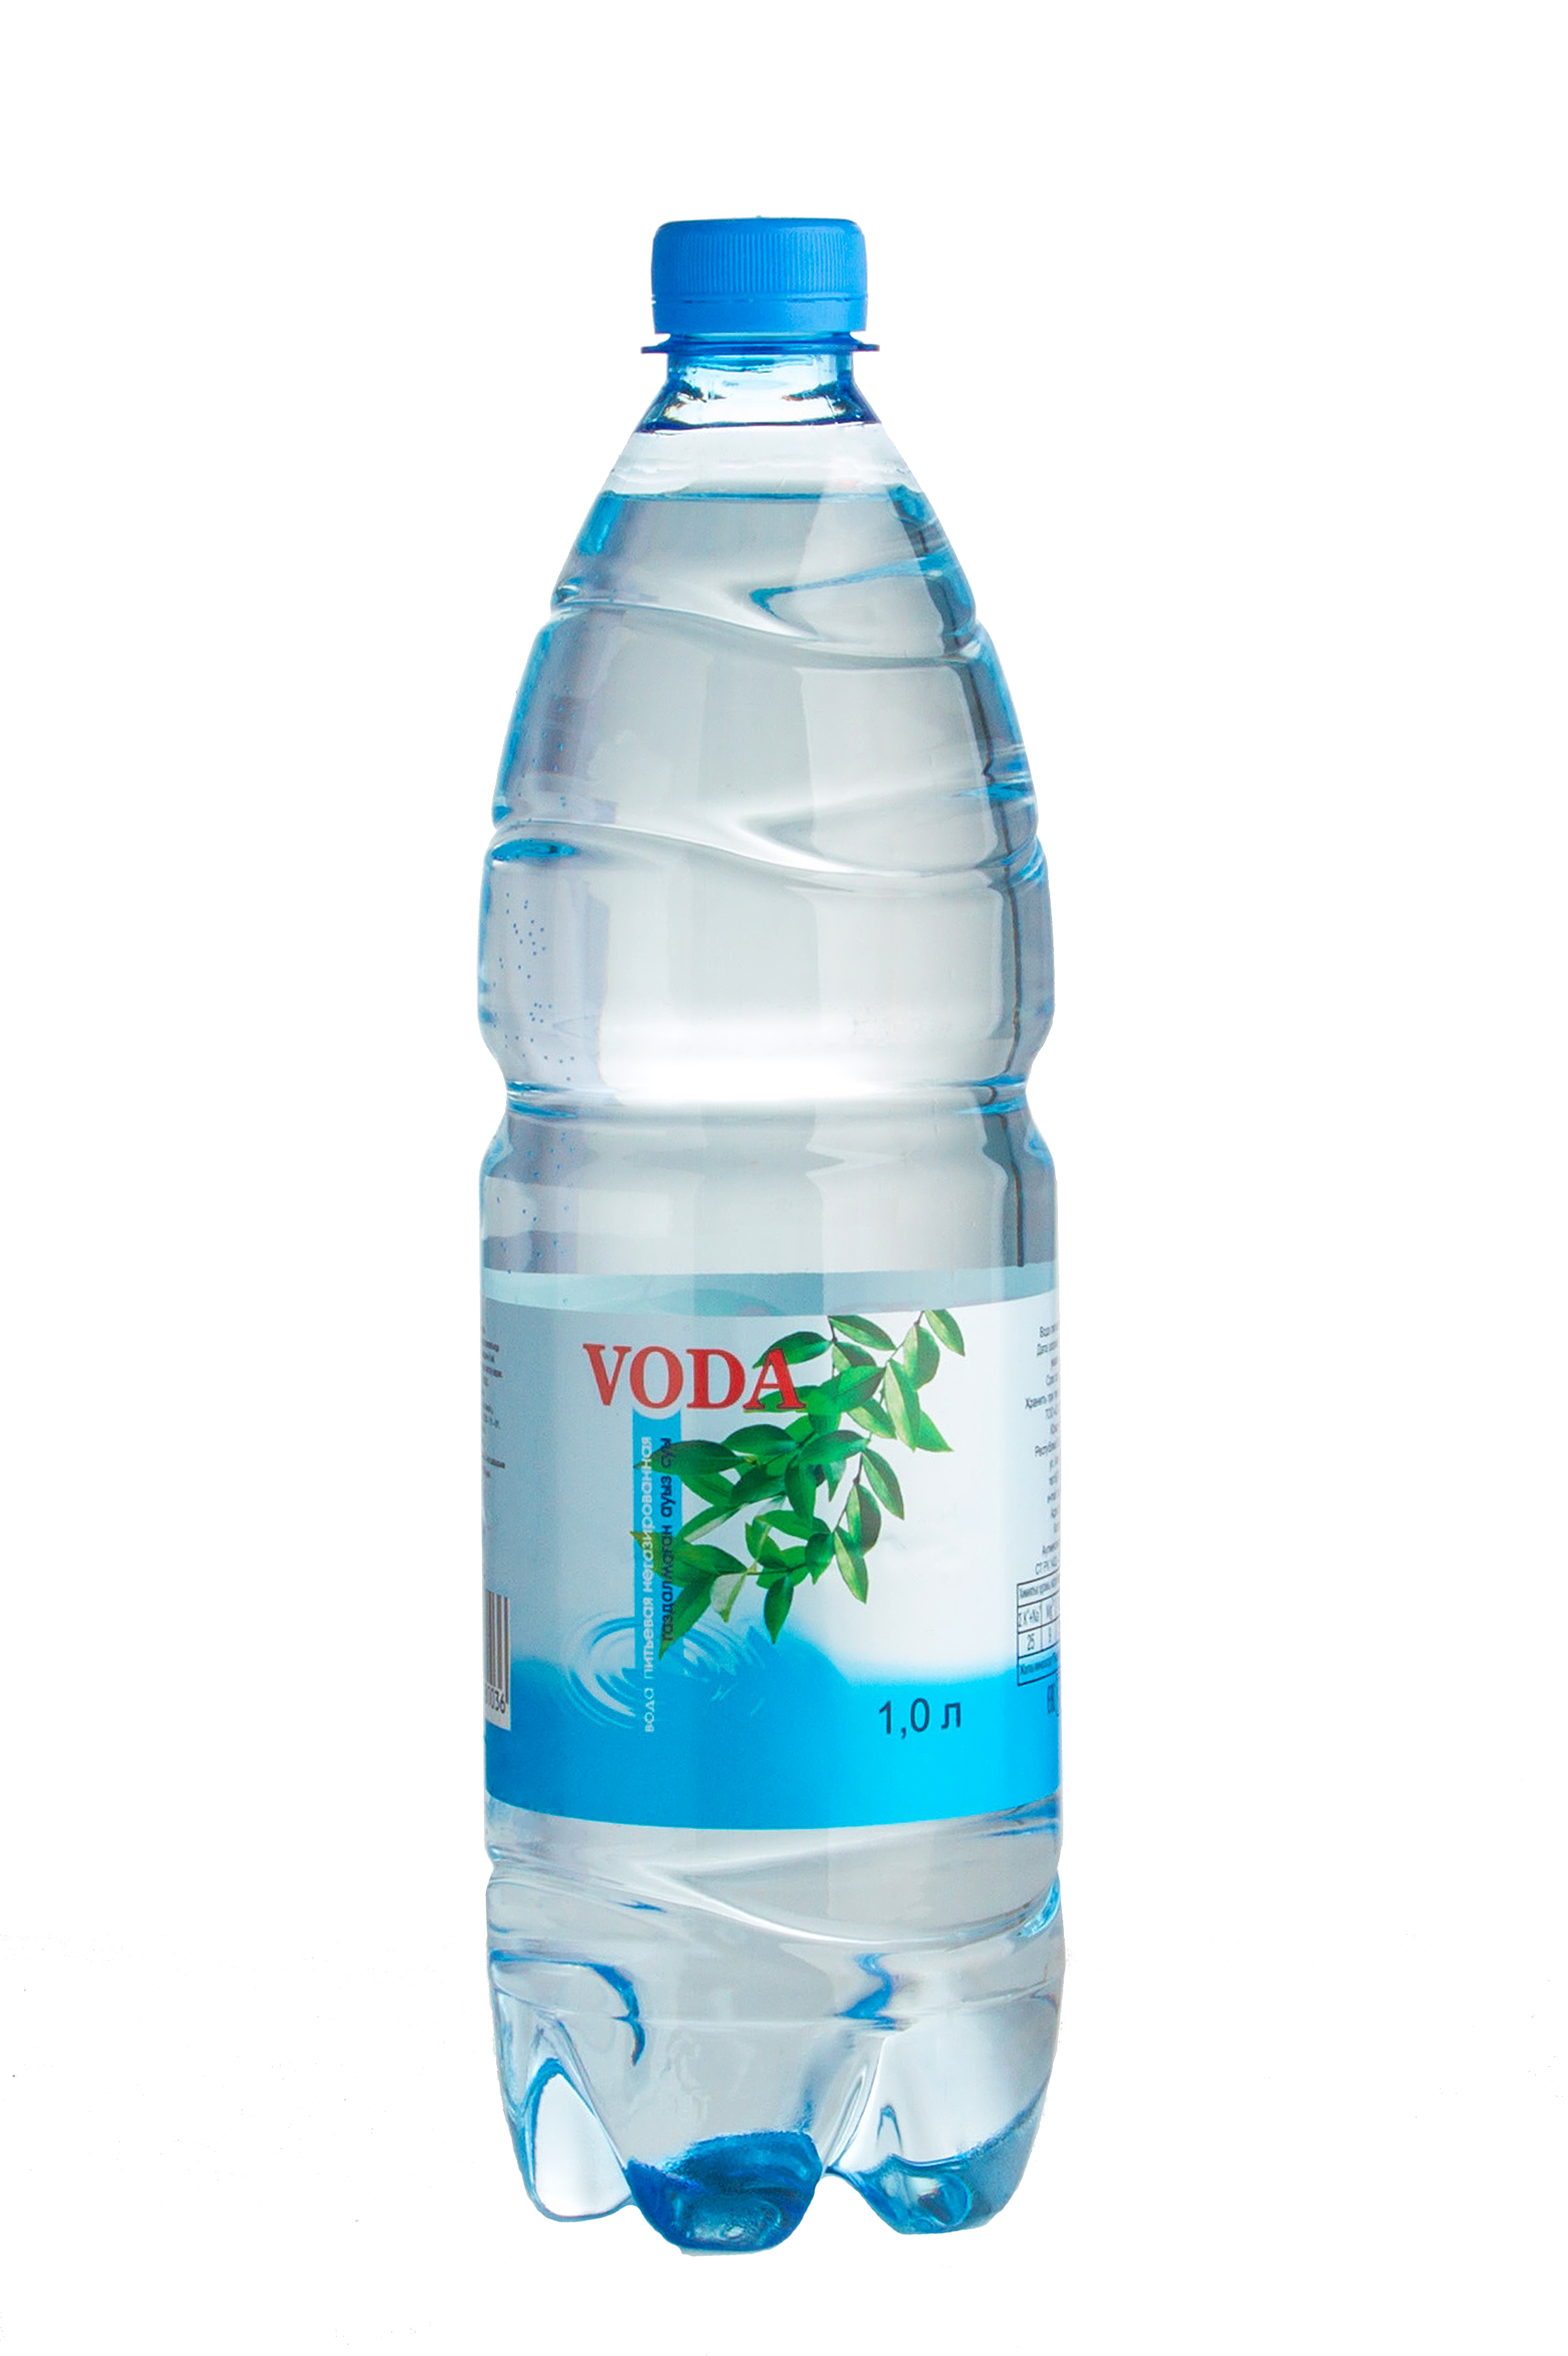 Вода питьевая “Voda” - 1,0л